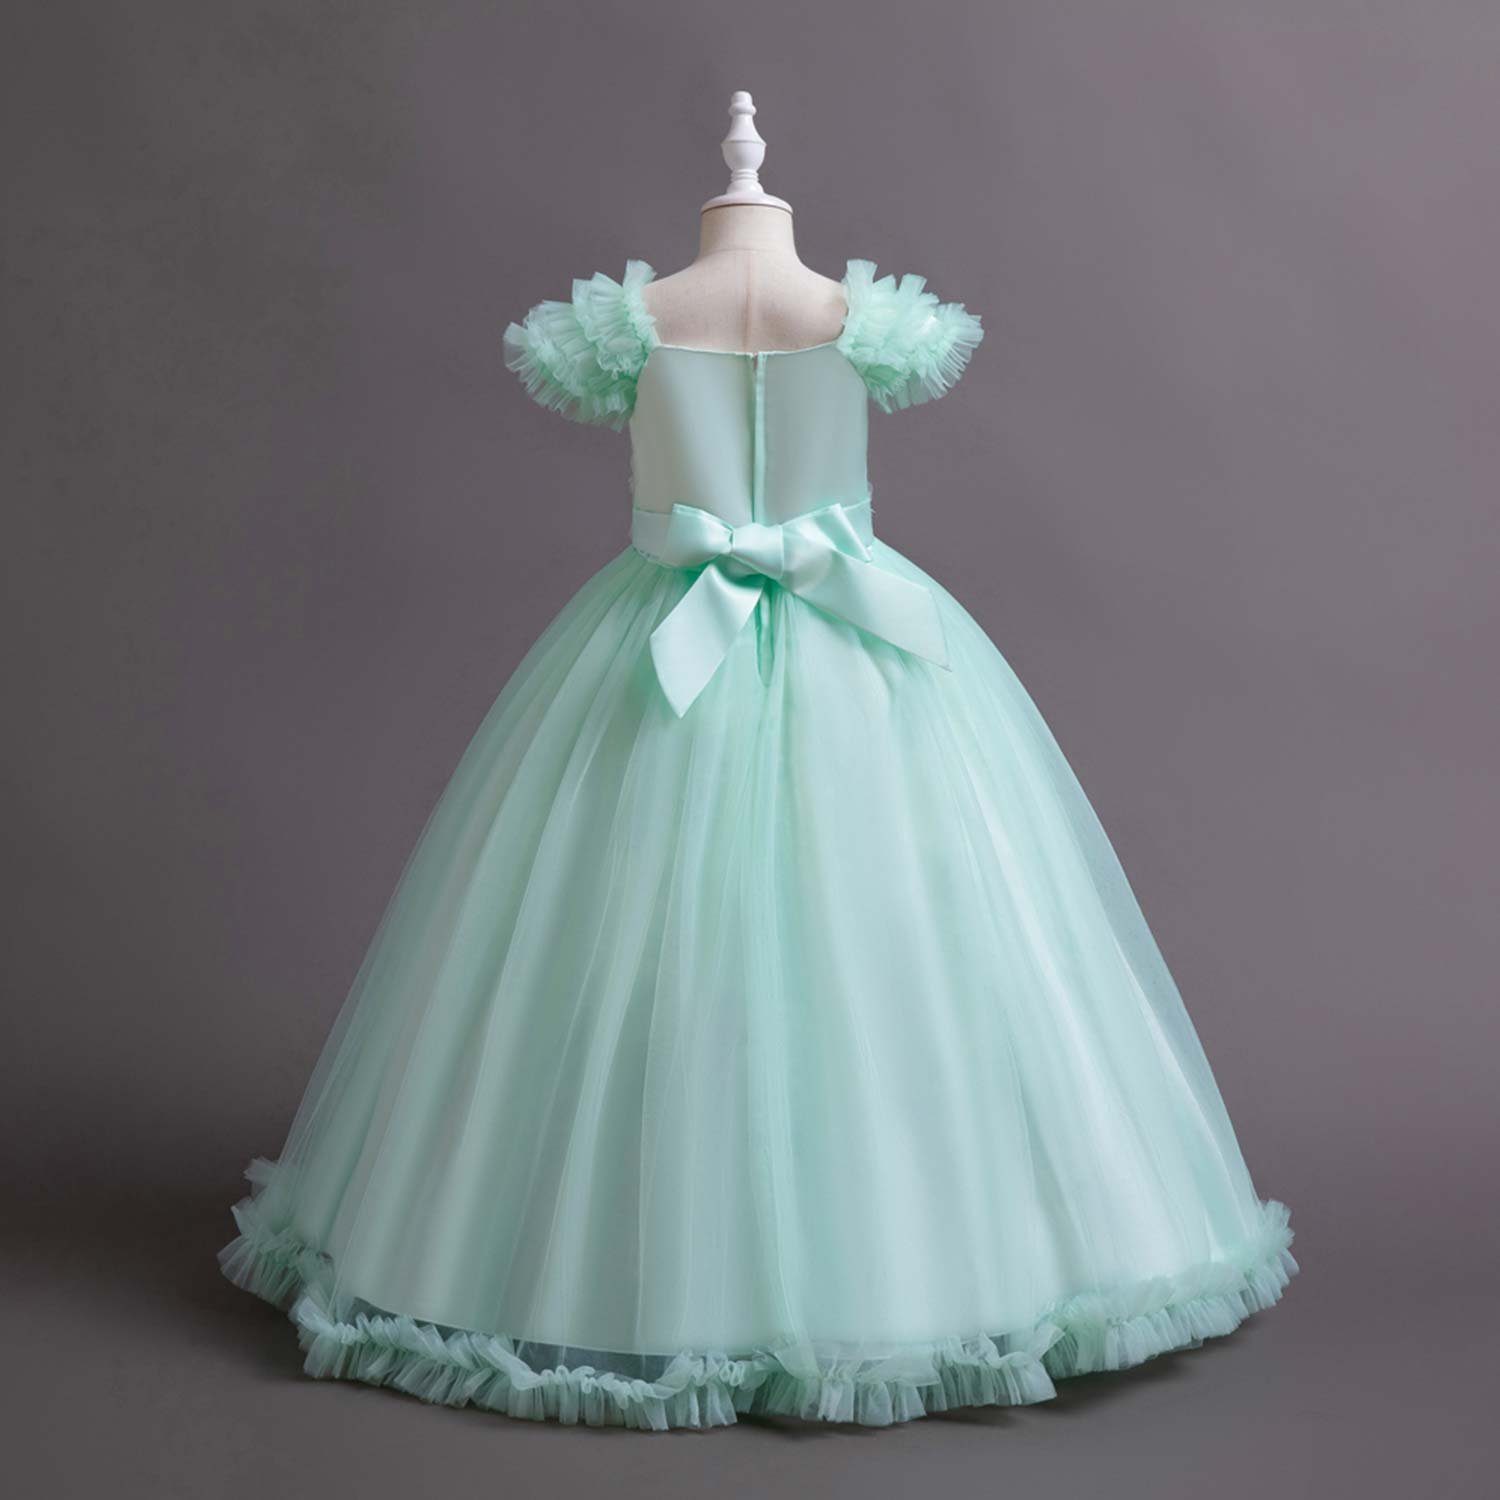 Daisred Tüllkleid Kinderkleider Abendkleider Ballkleid Grün Prinzessinnenkleider